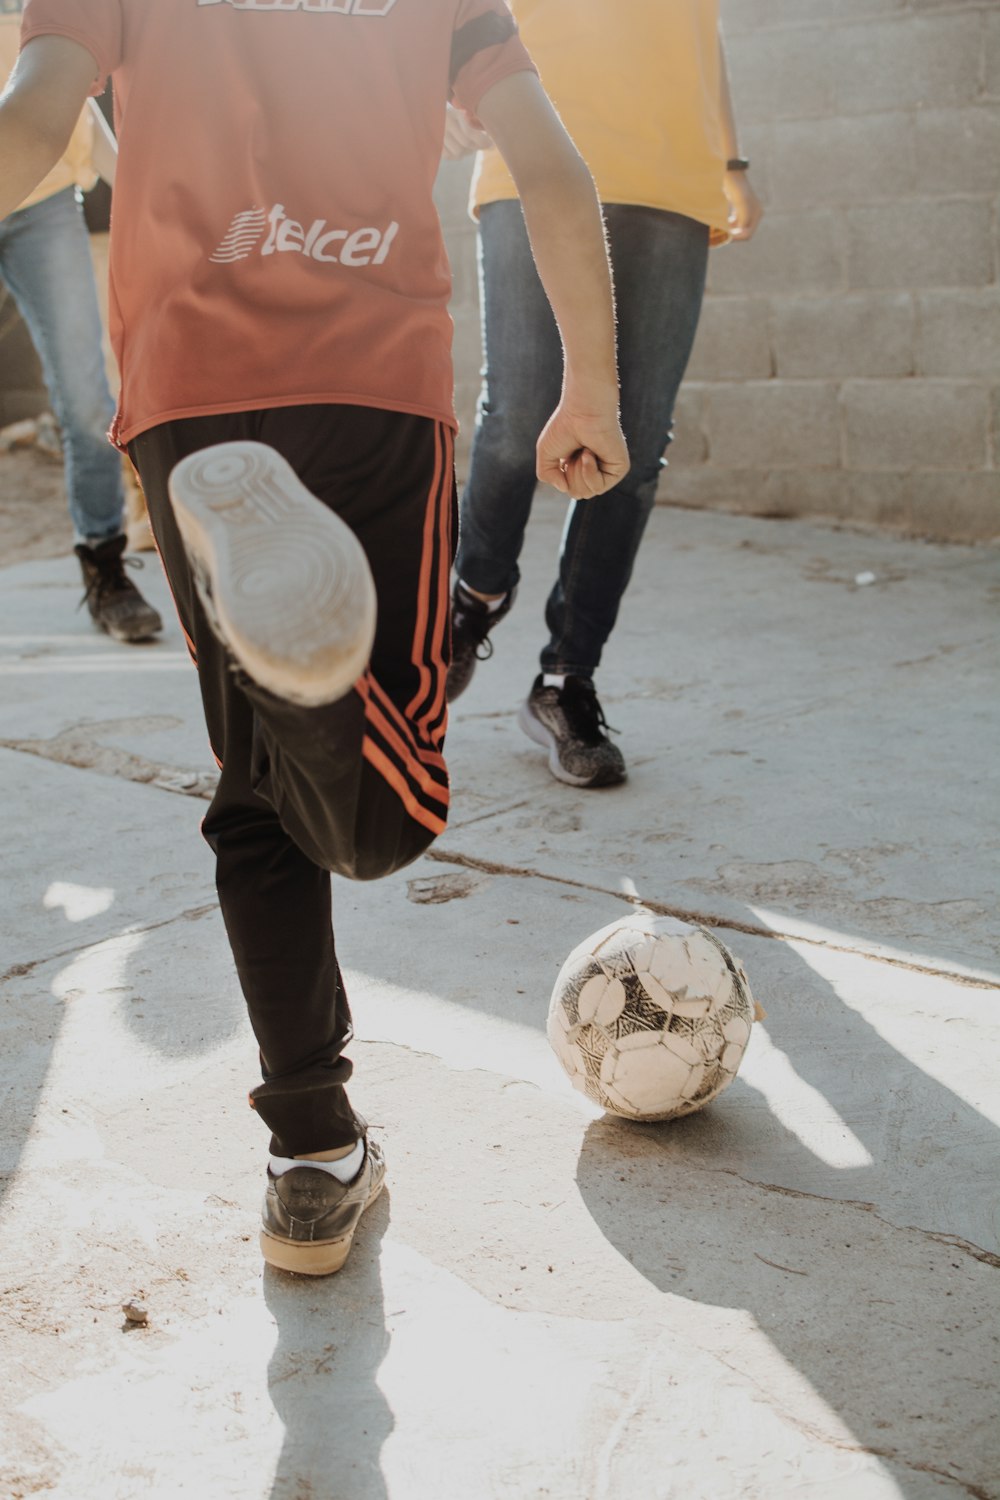 Un jeune garçon donnant un coup de pied dans un ballon de soccer sur un trottoir